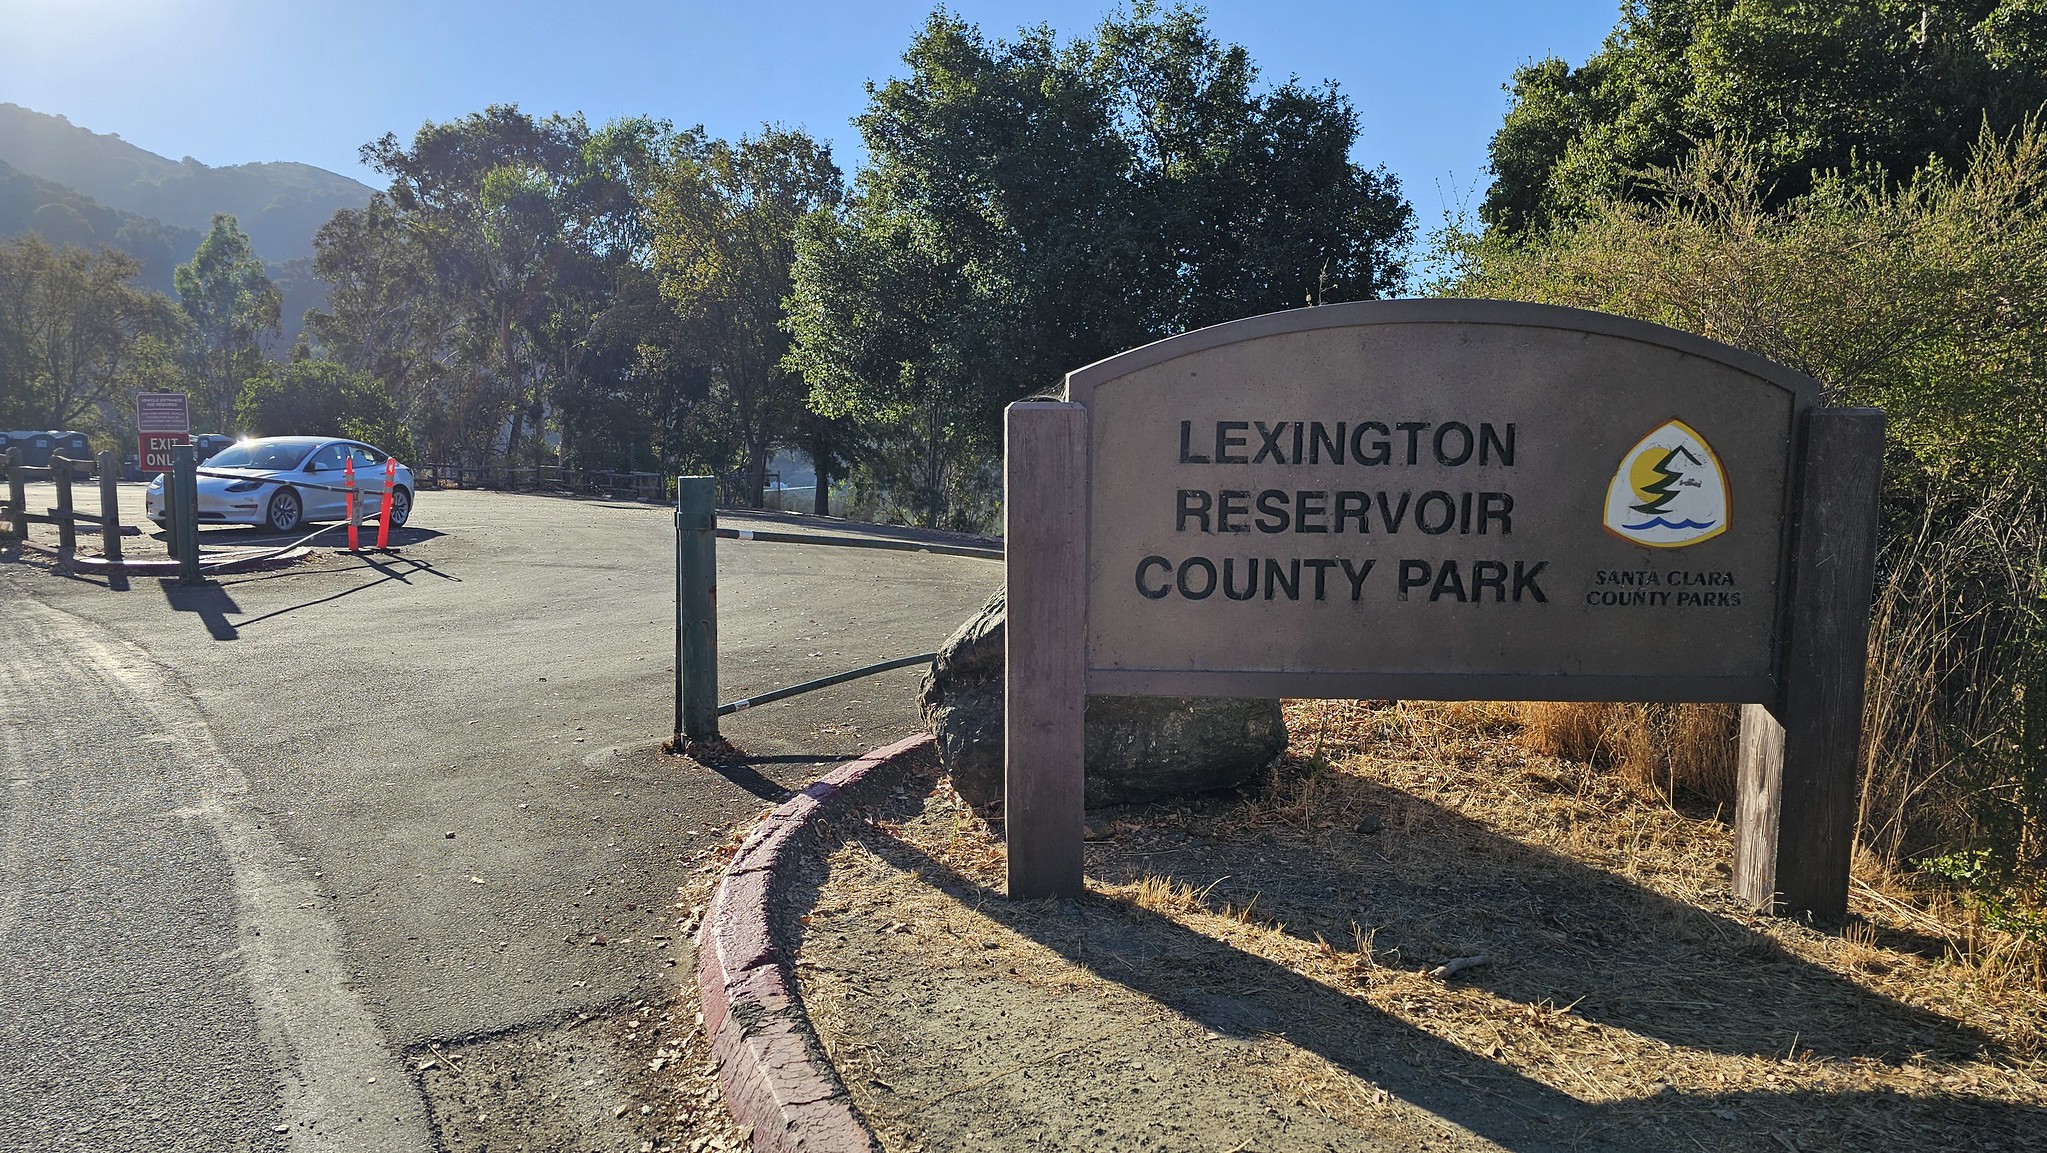 Lexington Reservoir County Park